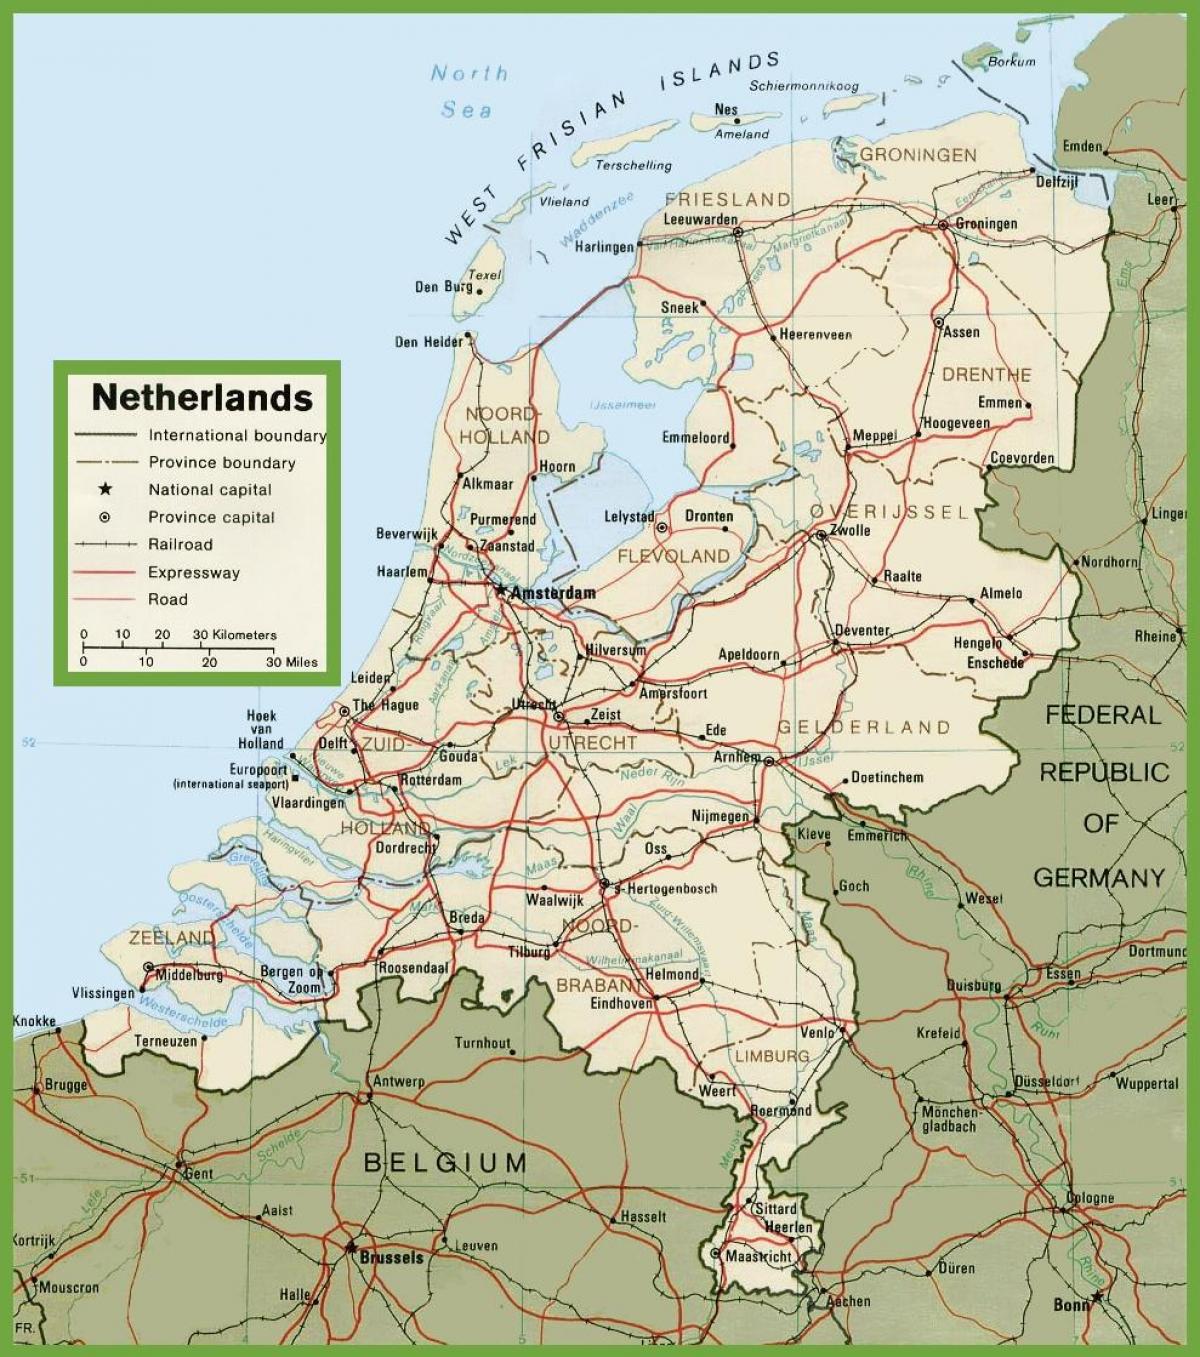 holandija mapa Holandija mapa puteva   mapa Puteva u Holandiji (Zapadne Europe  holandija mapa